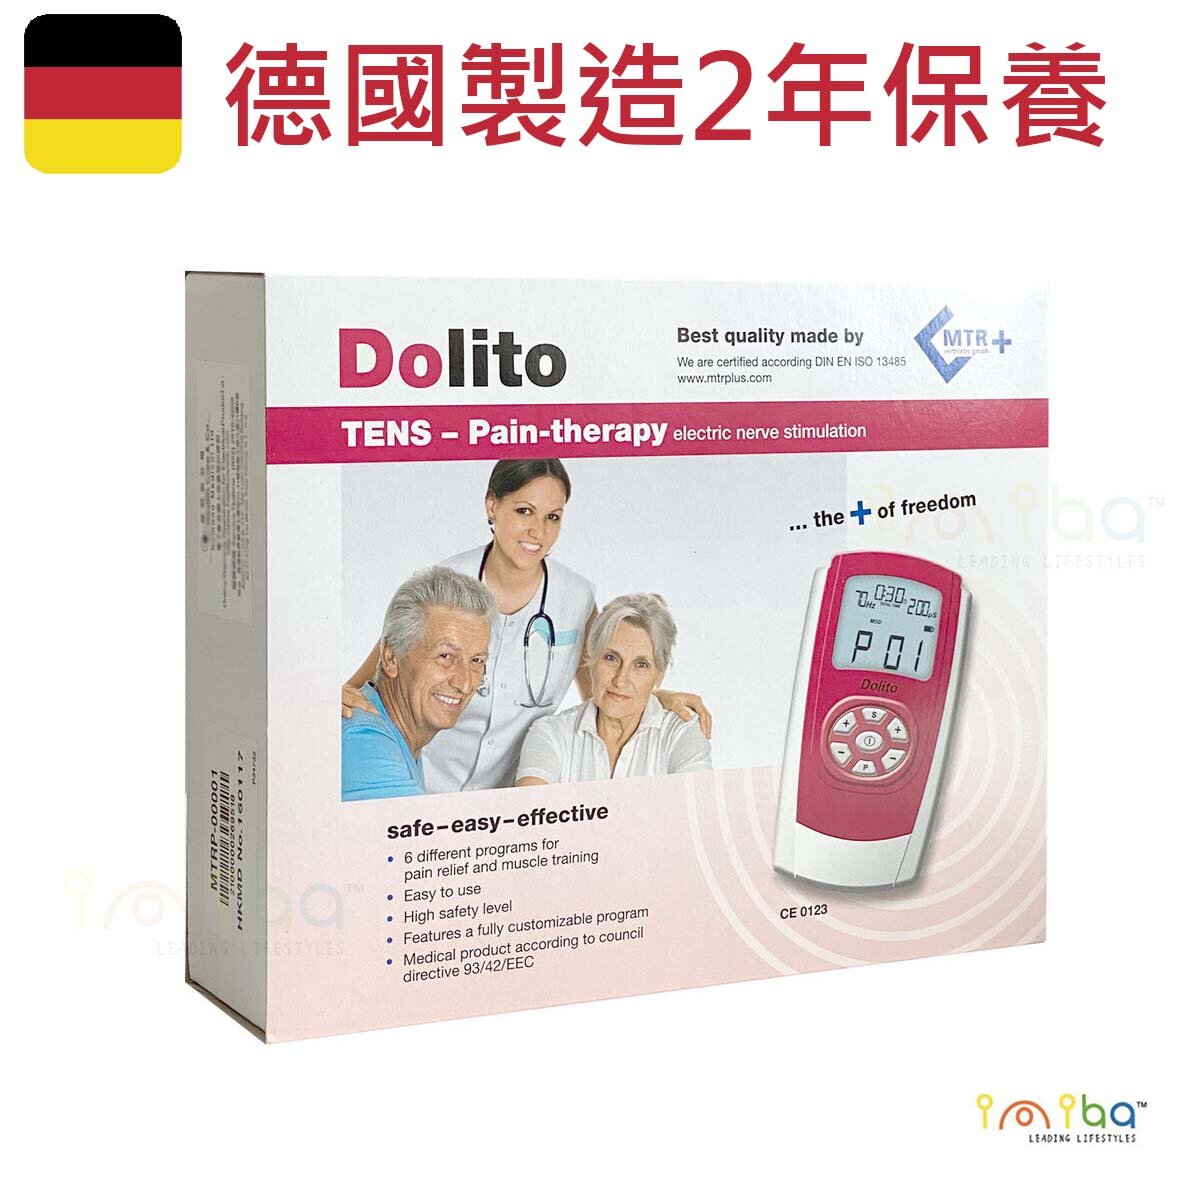 德國品牌 Dolito 簡易電刺激止痛機 TENS止痛   德國製造 原裝行貨  肌肉電刺激器  電療機 止痛脈衝機